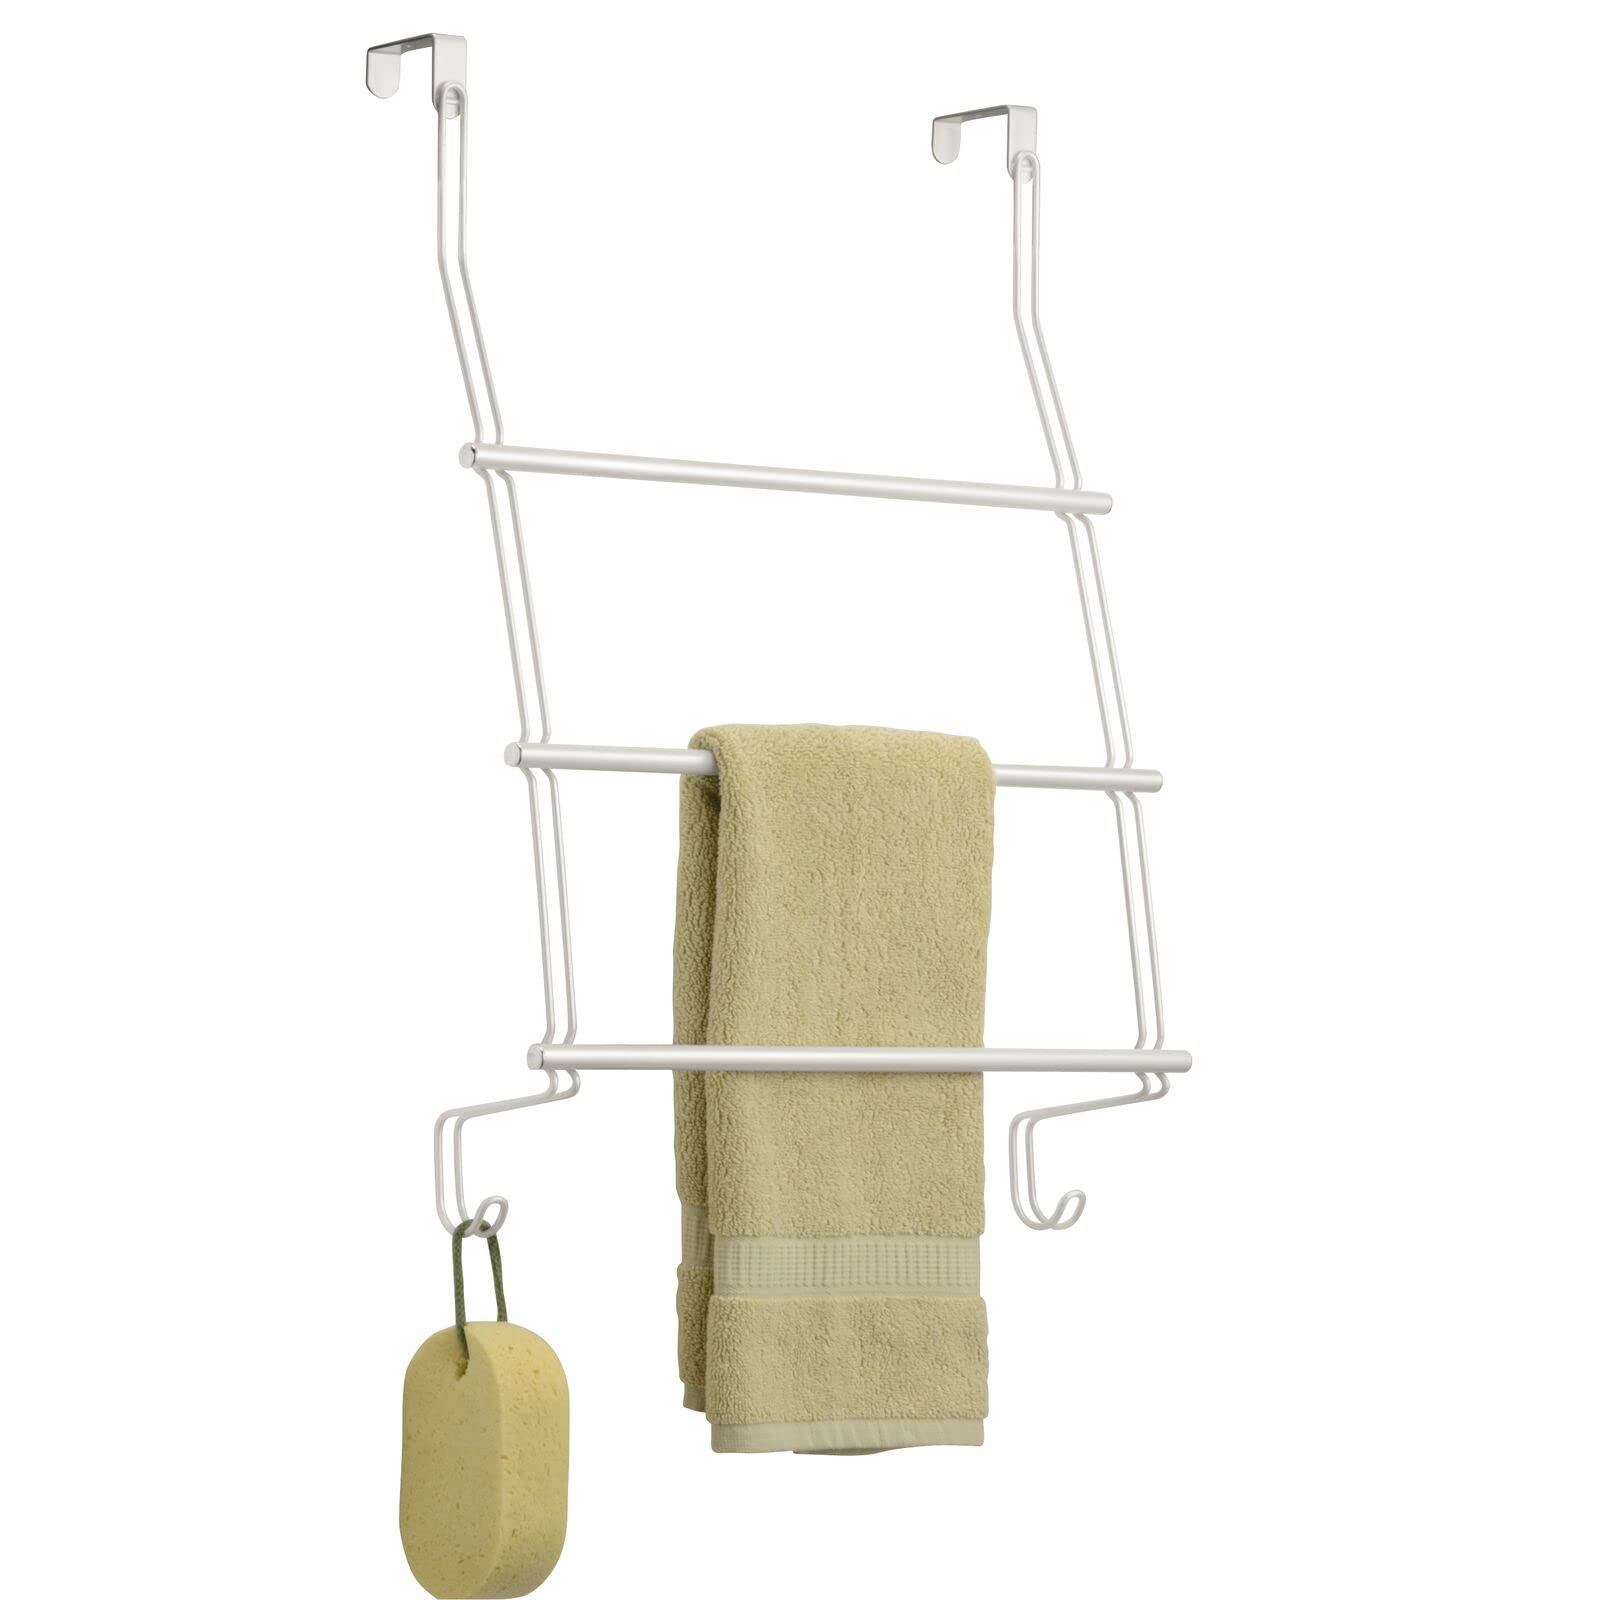 mDesign Handtuchhalter ohne Bohren montierbar - Handtuchhalter Tür-Befestigung einfach einzuhängen - als Duschhandtuchhalter, Badetuchhalter & für Kleidung - aus robustem Edelstahl